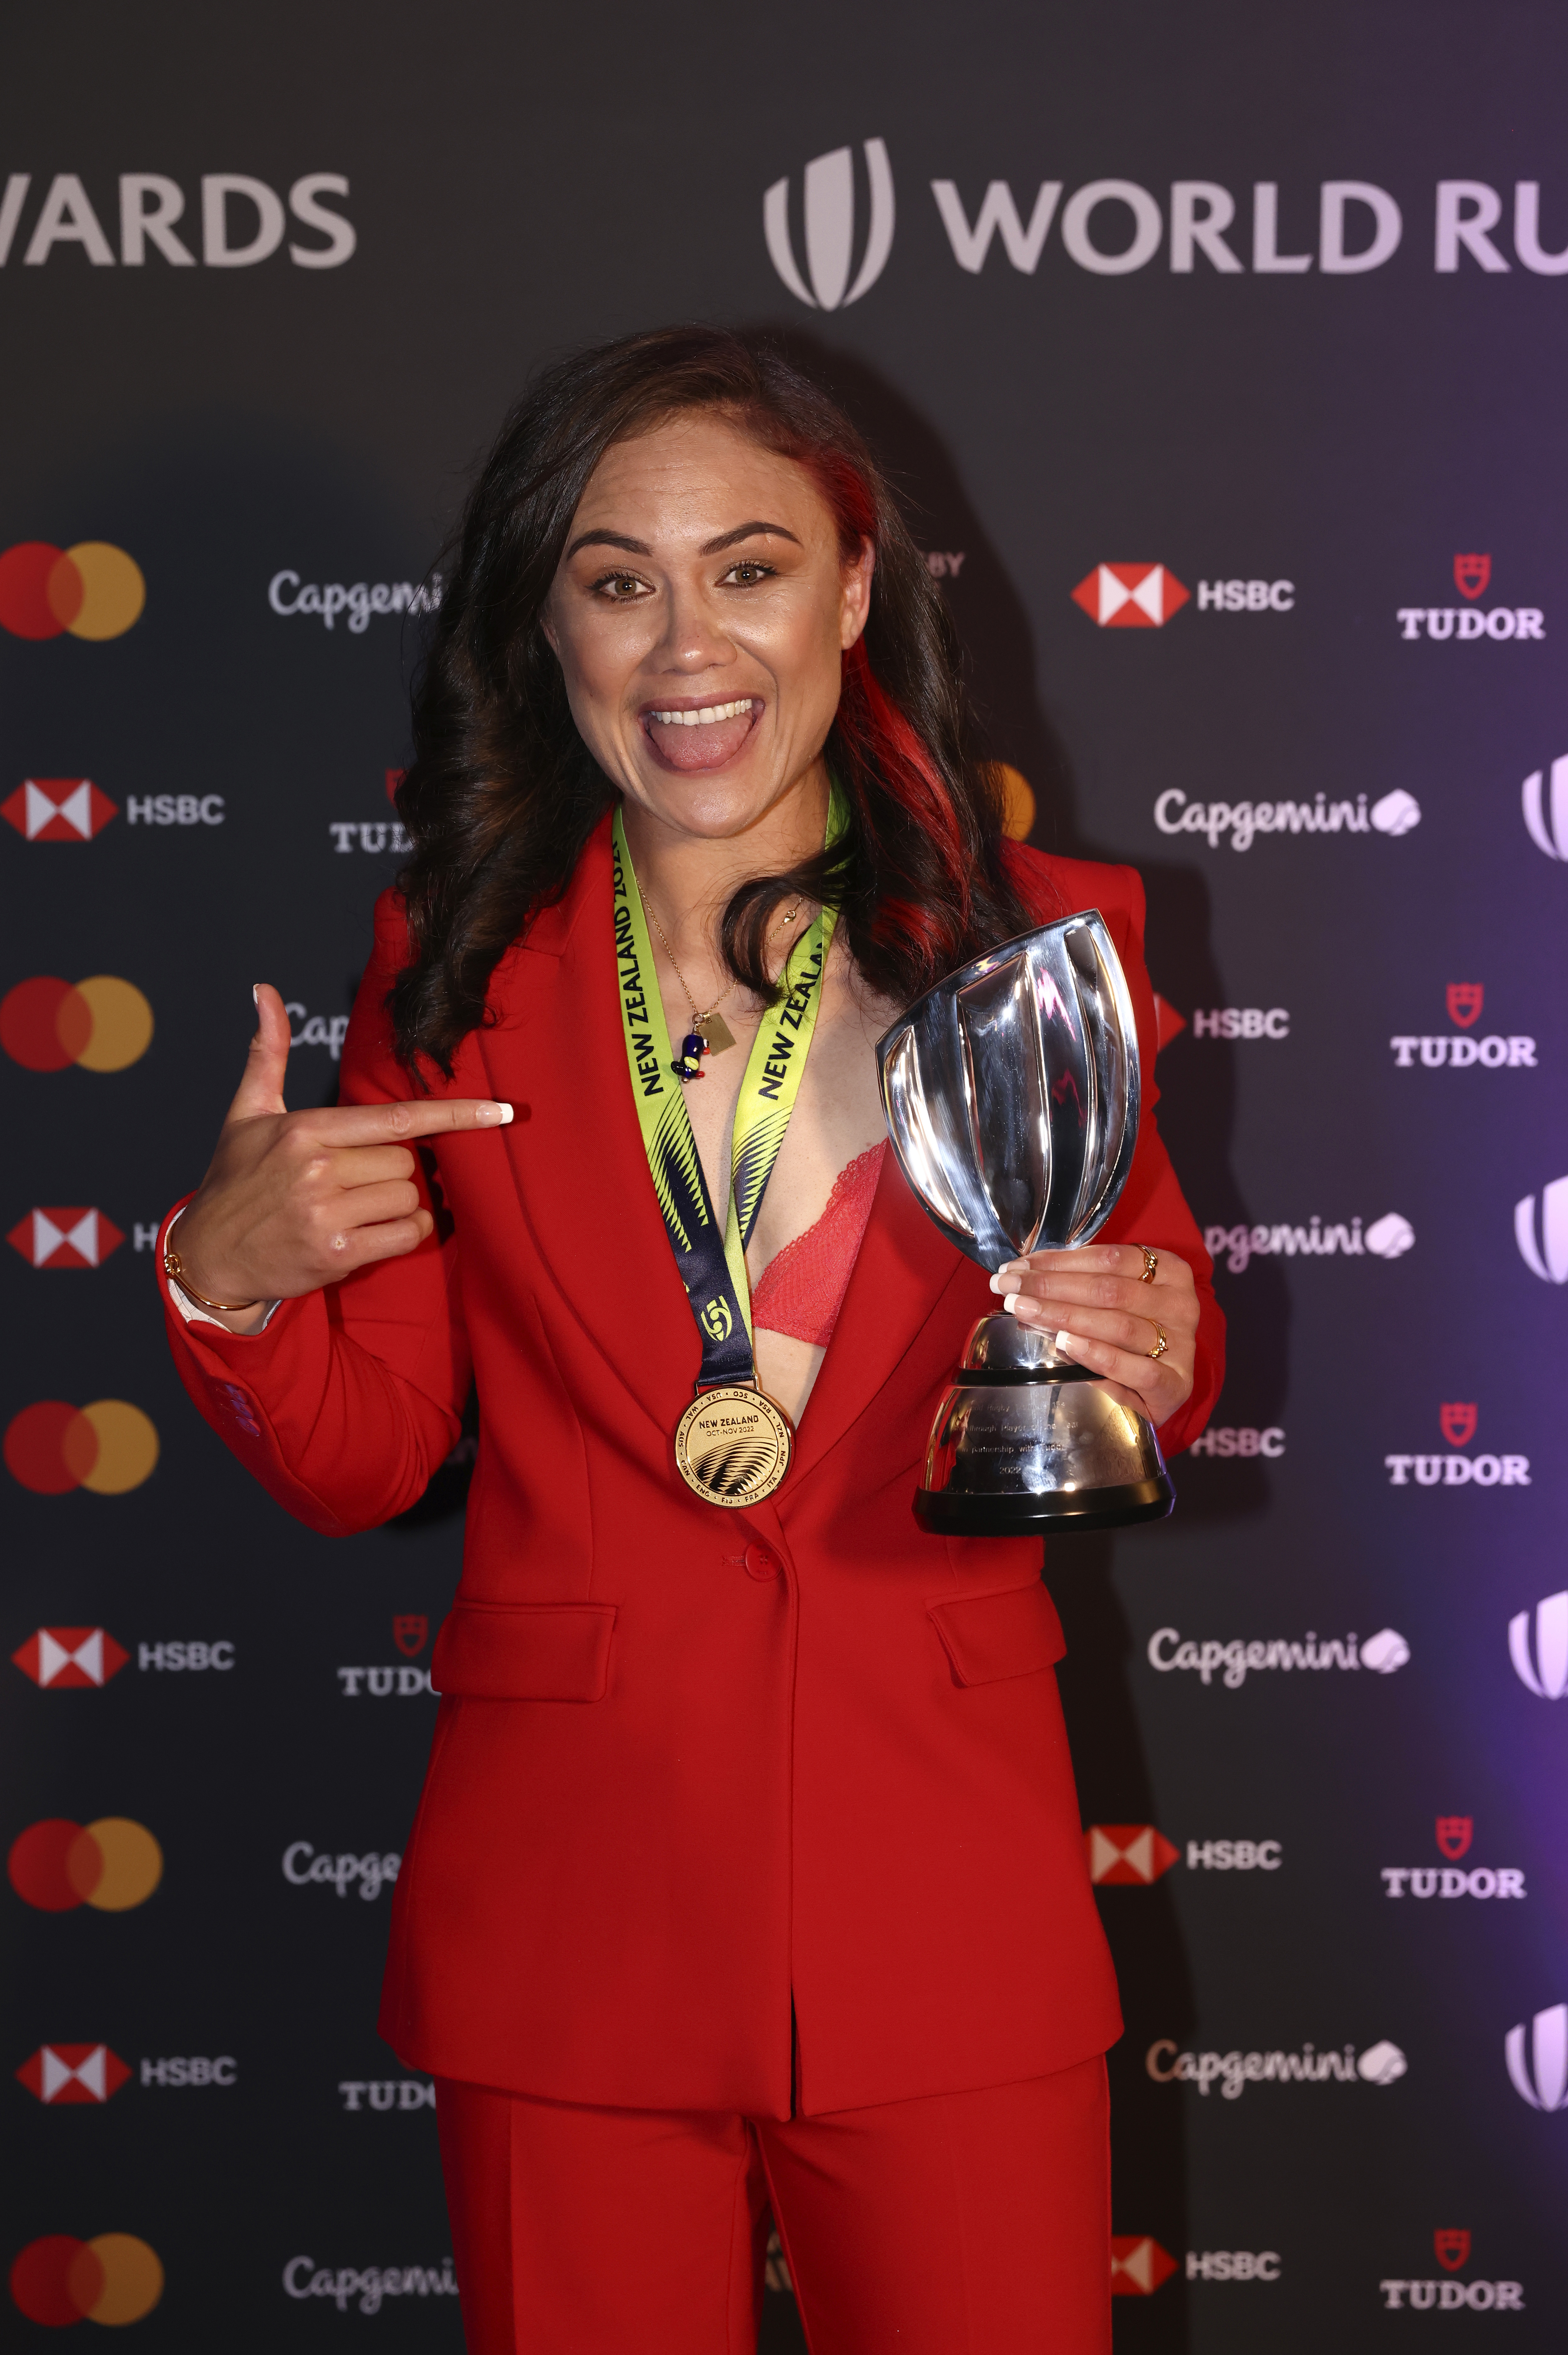 Ruby Tui a offert une deuxième médaille de Coupe du monde après avoir donné l’original à un fan